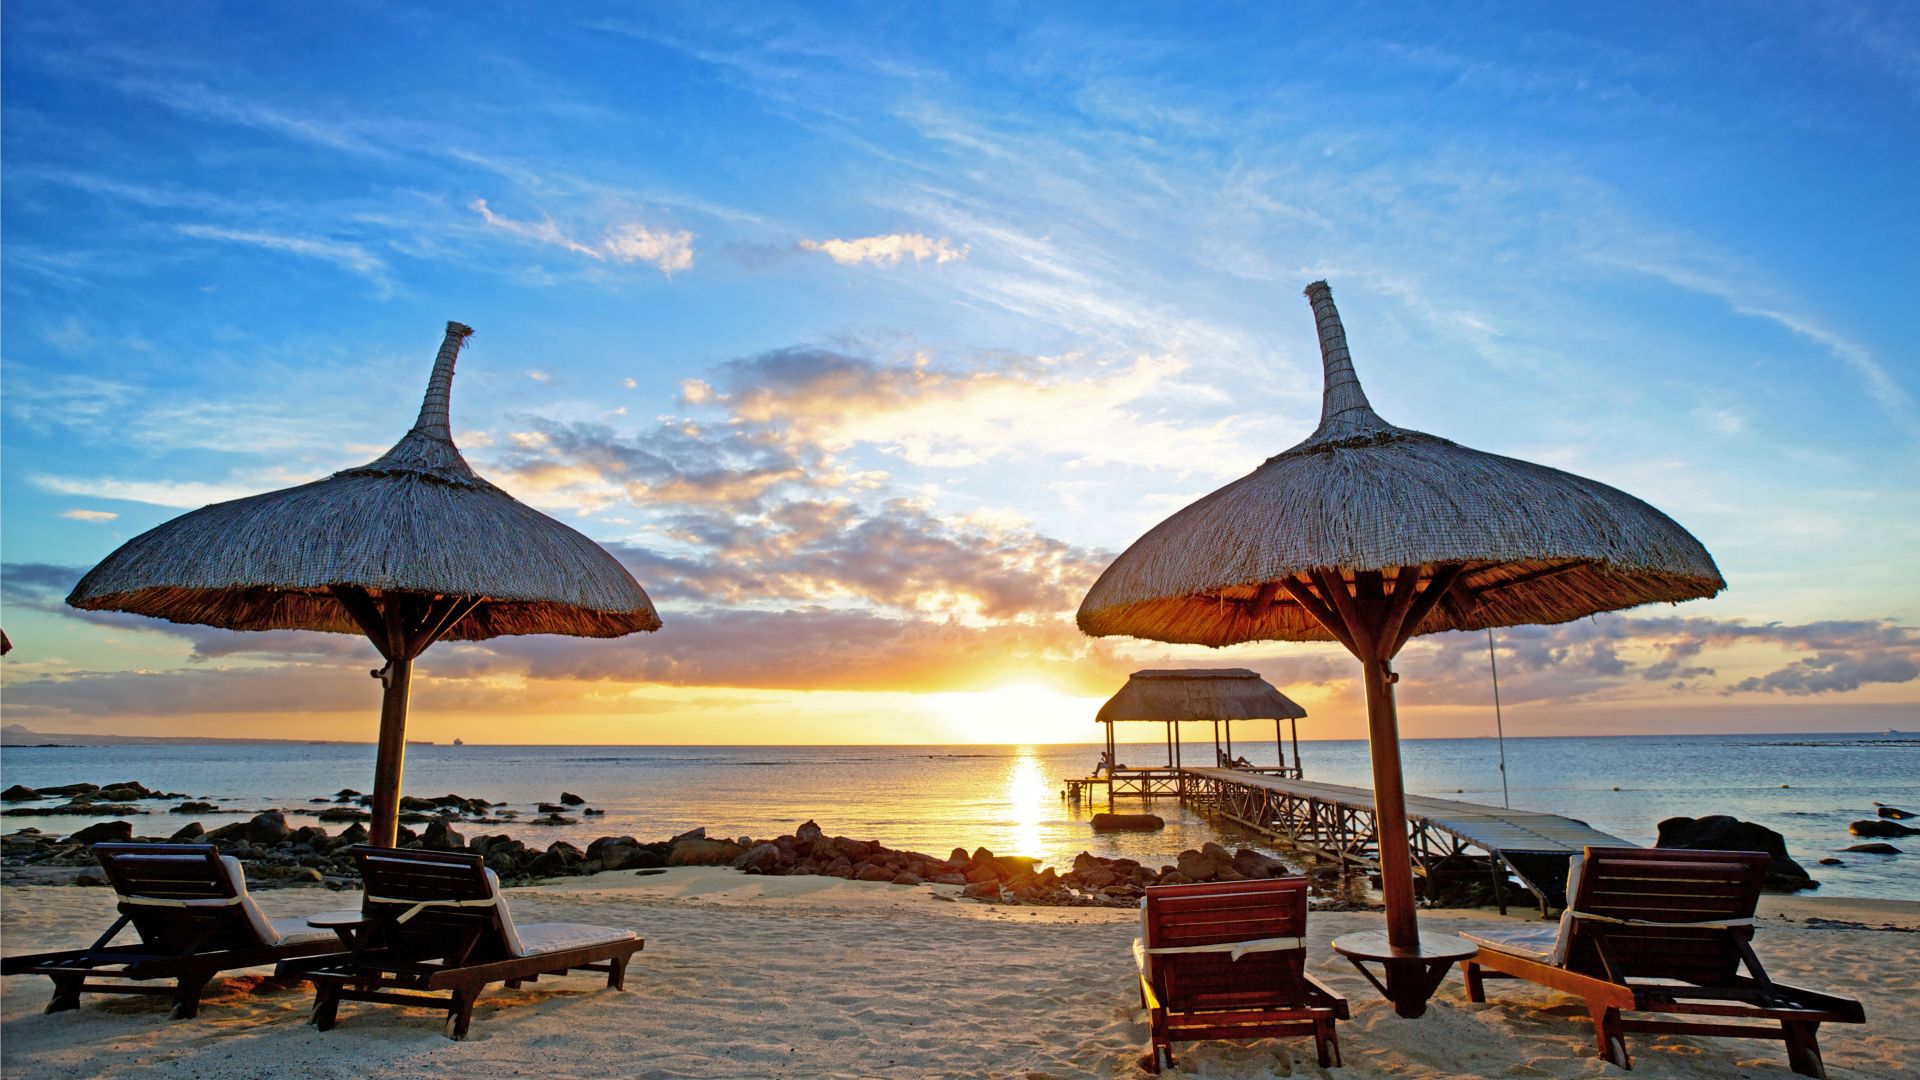 Маврикий, закат, Индийский океан, пляж, песок, путешествия, туризм, Mauritius, sunset, Indian ocean, beach, sand, travel, tourism (horizontal)